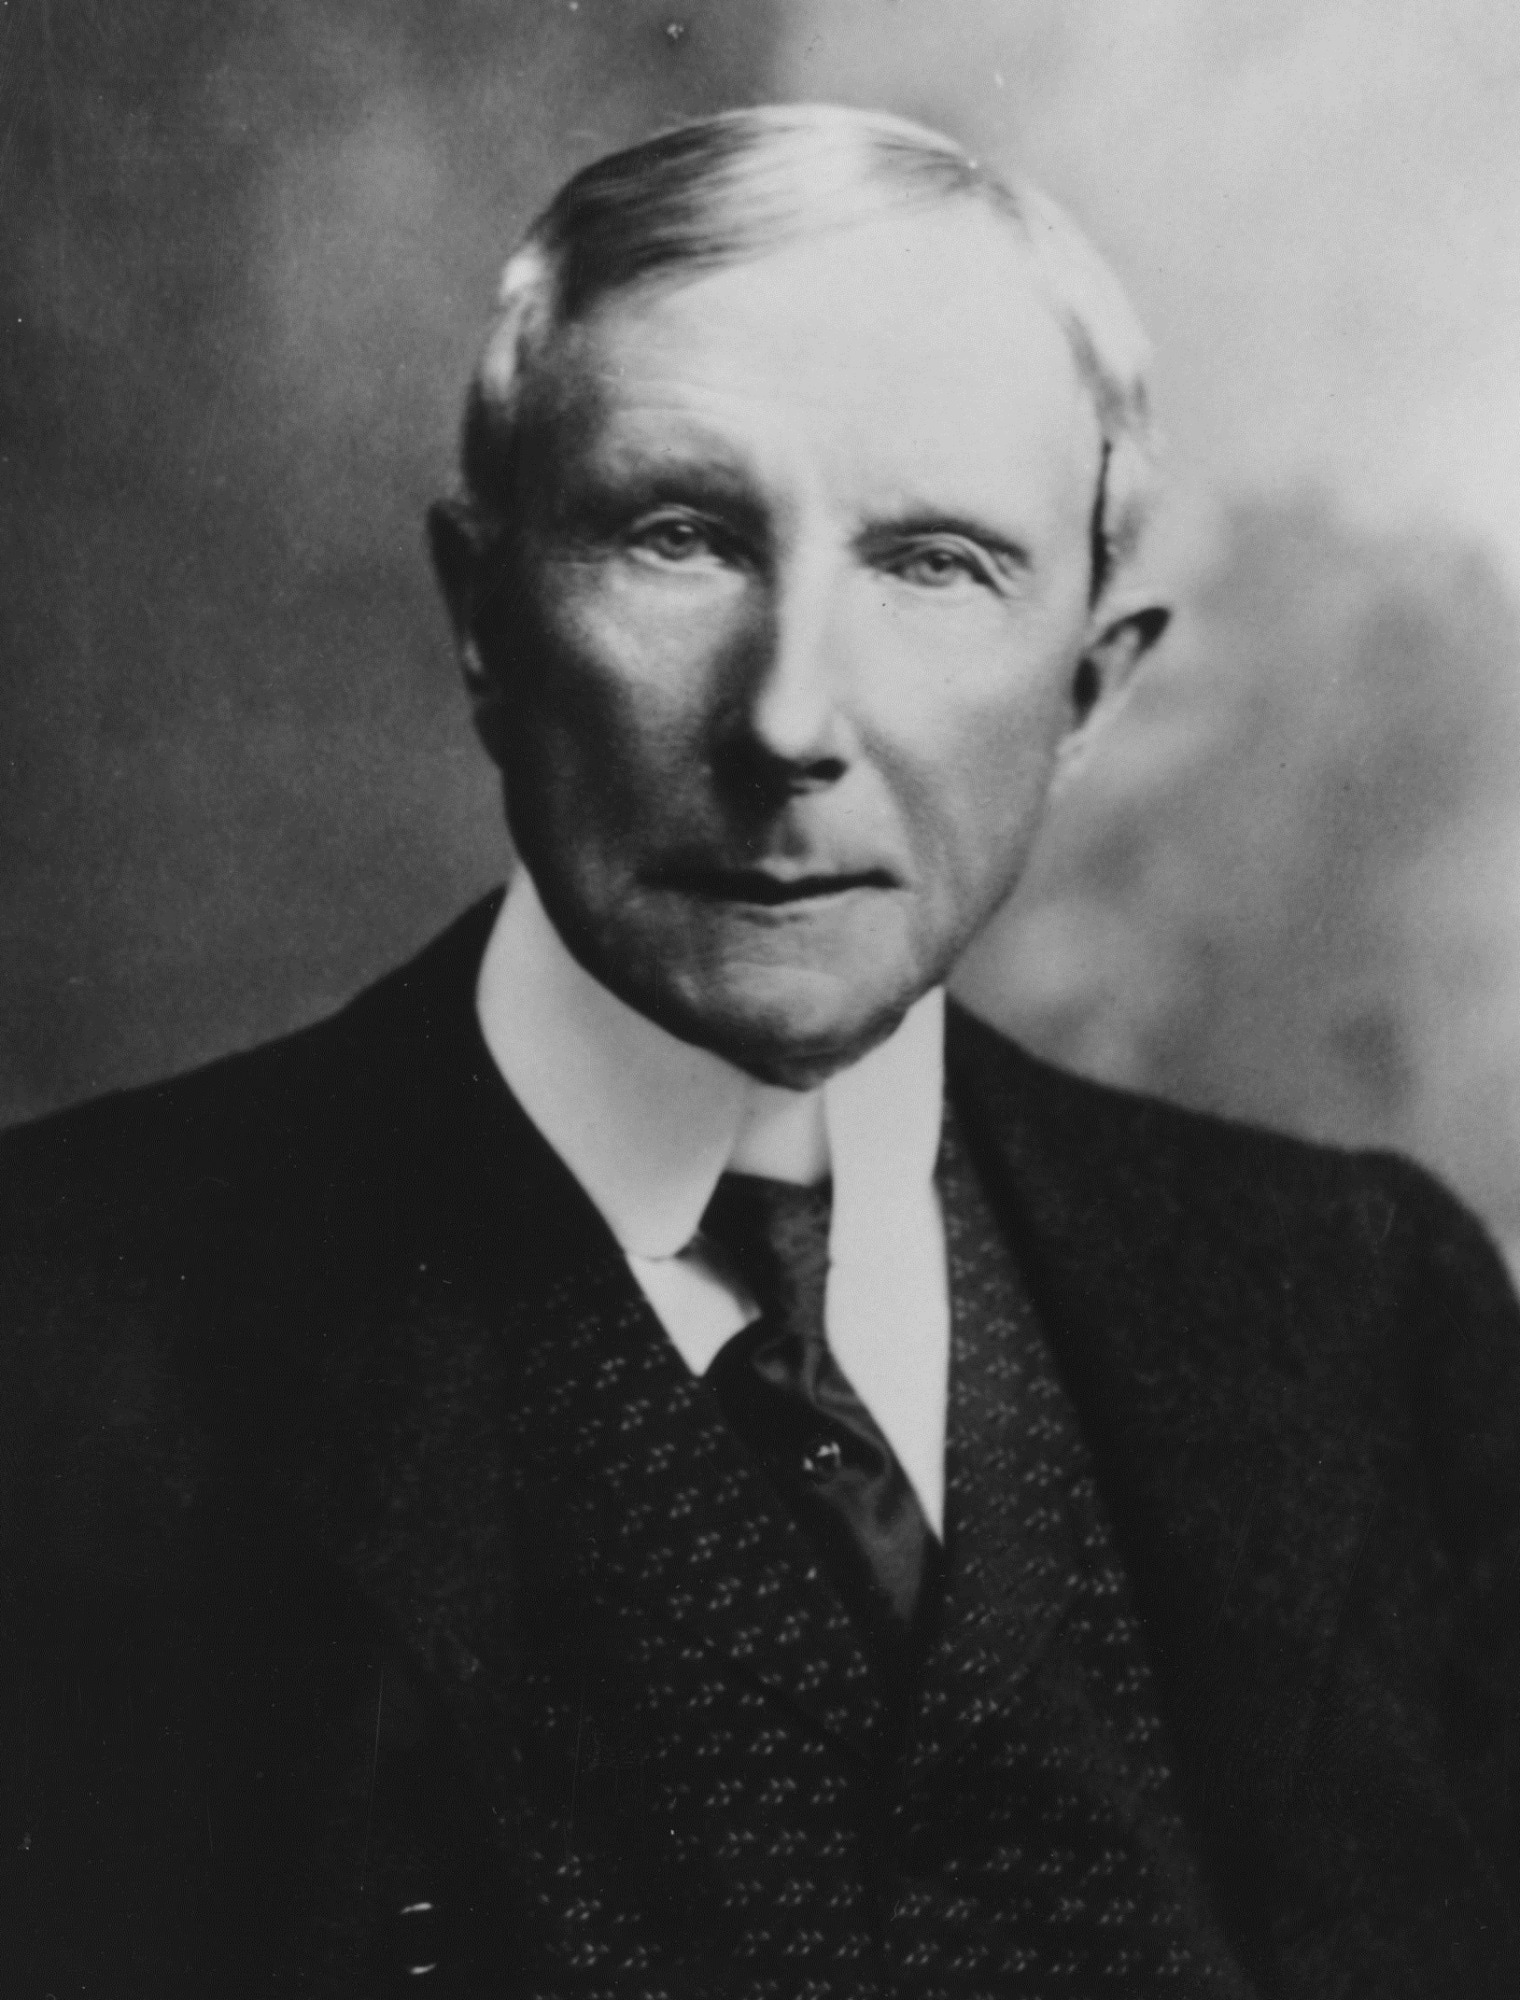 John Davison Rockefeller 1839-1937